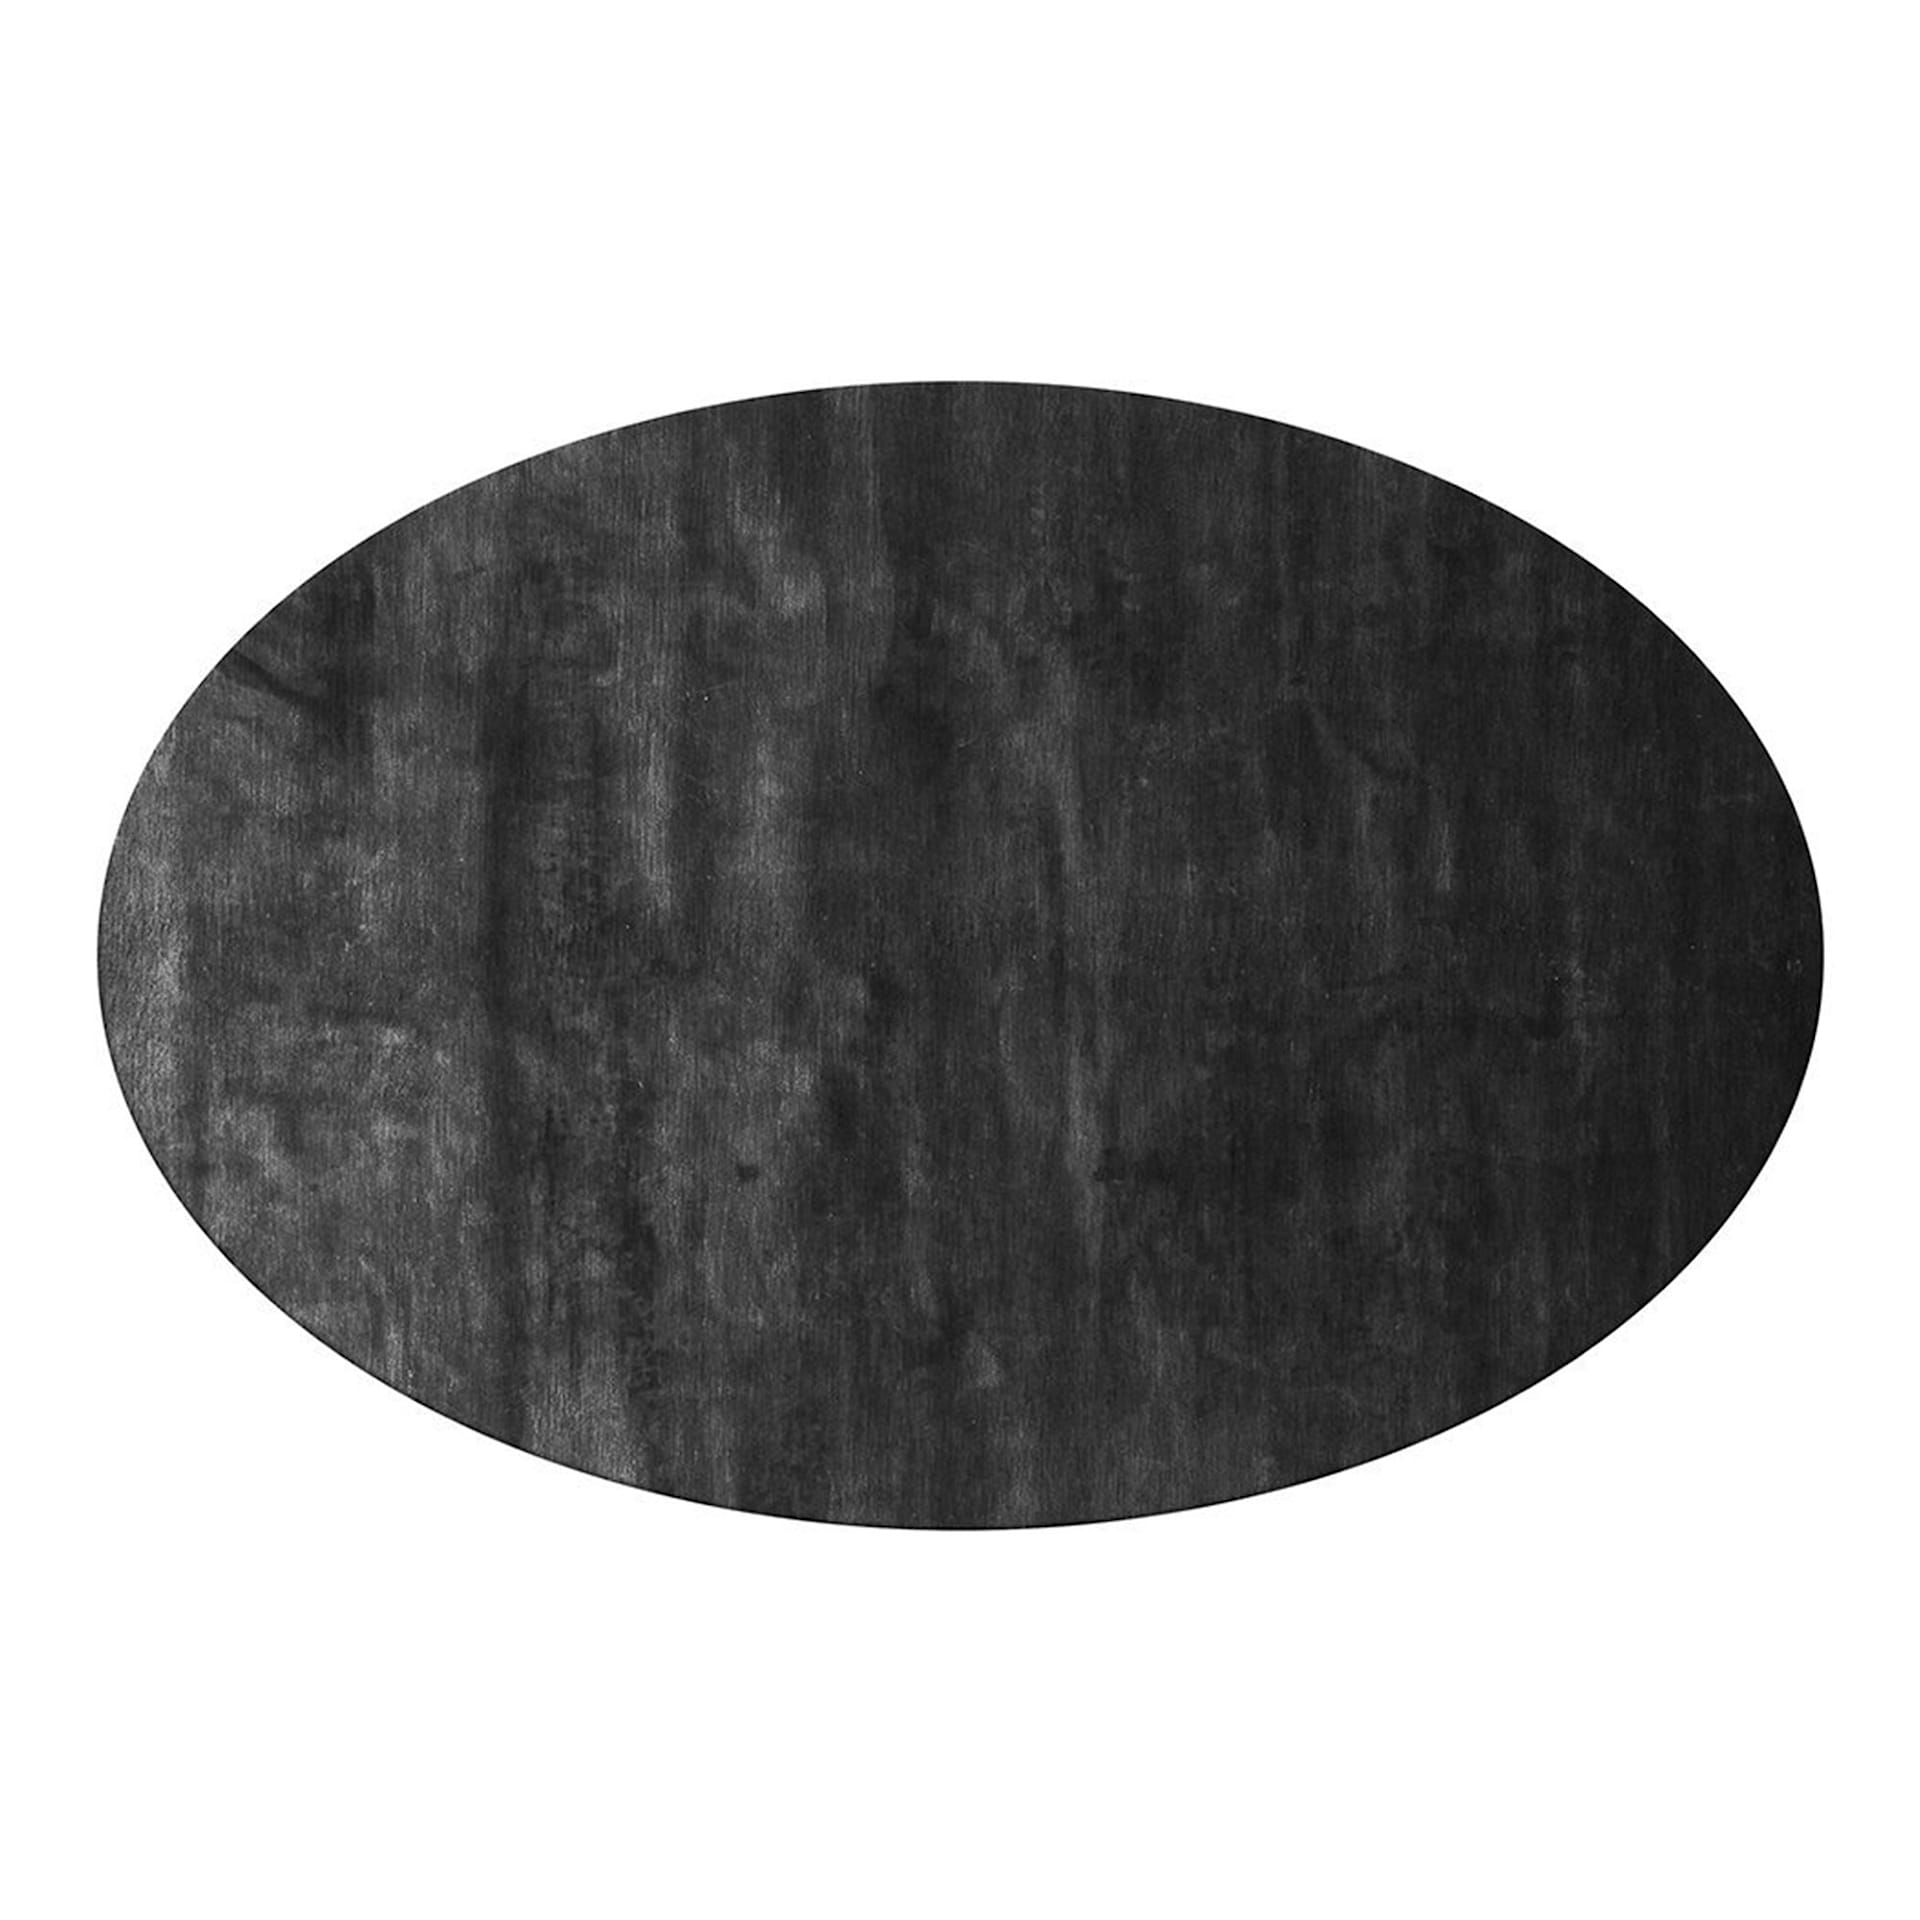 Frame Carpet Oval - Poliform - NO GA